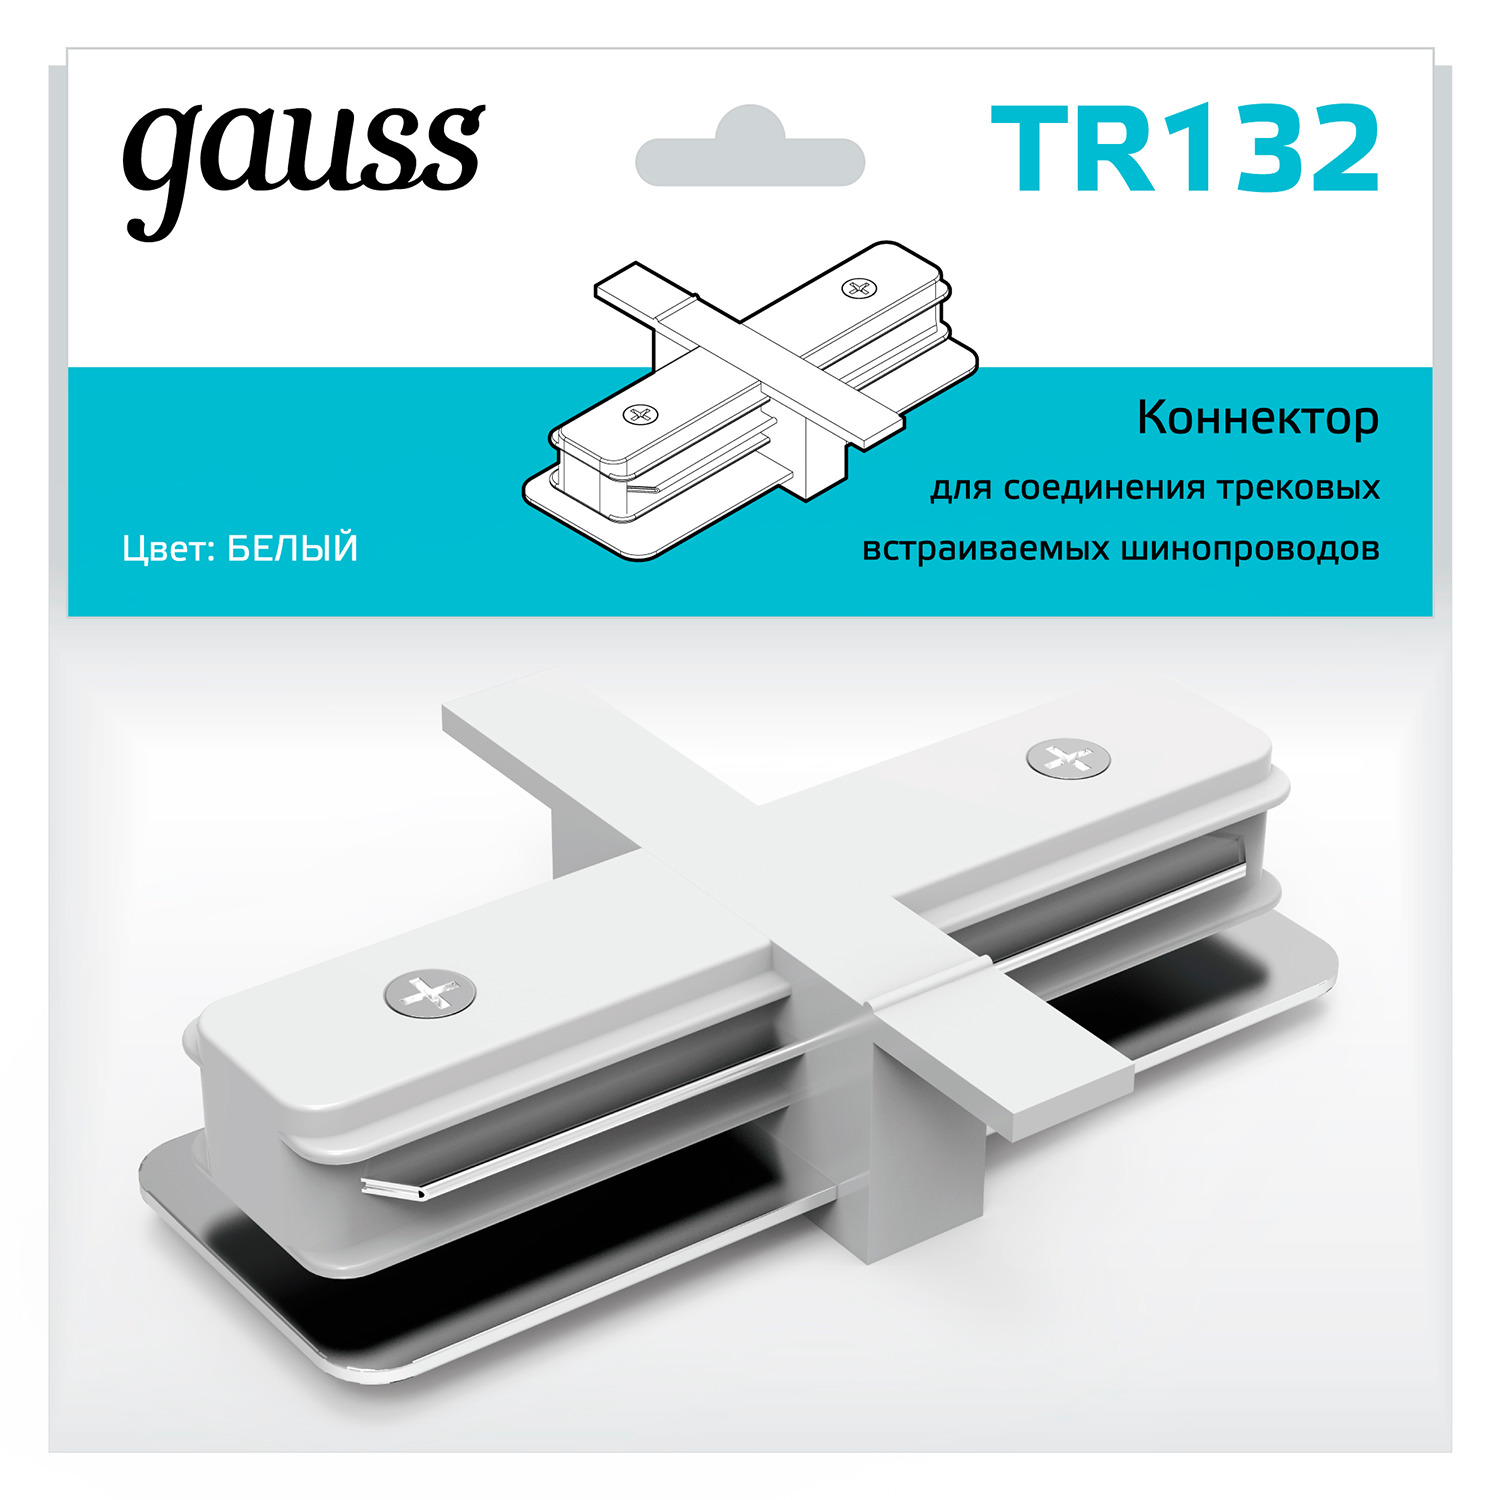 Коннектор Gauss для встраиваемых трековых шинопроводов прямой (I) белый коннектор gauss для встраиваемых трековых шинопроводов